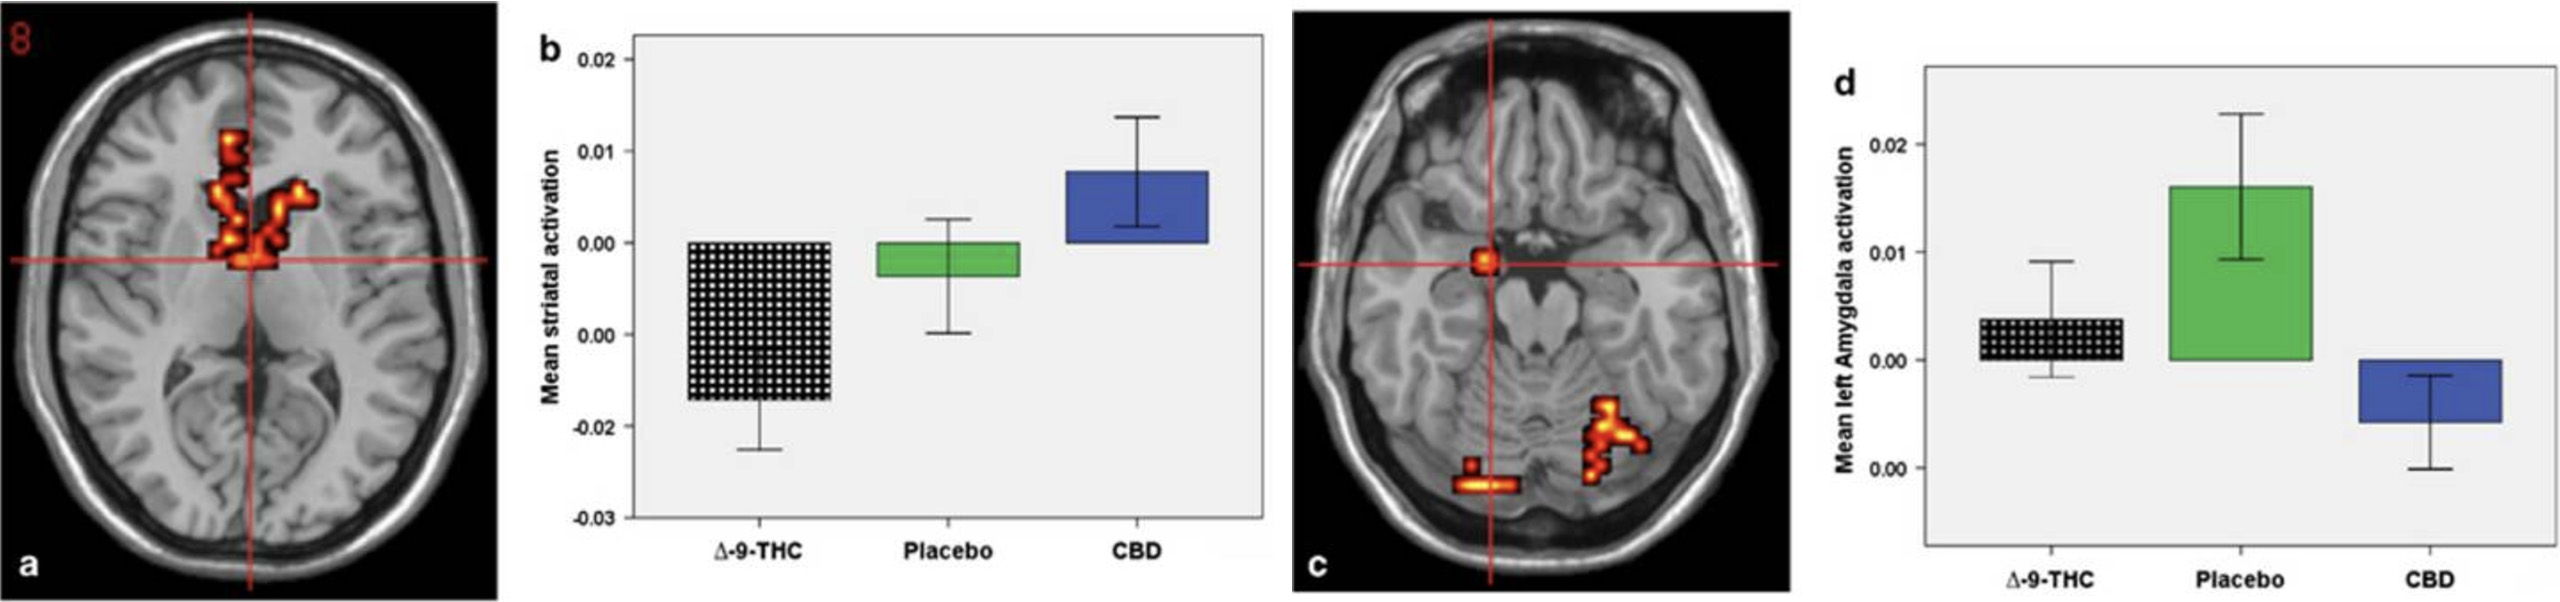 réactions du cerveau au CBD et au THC